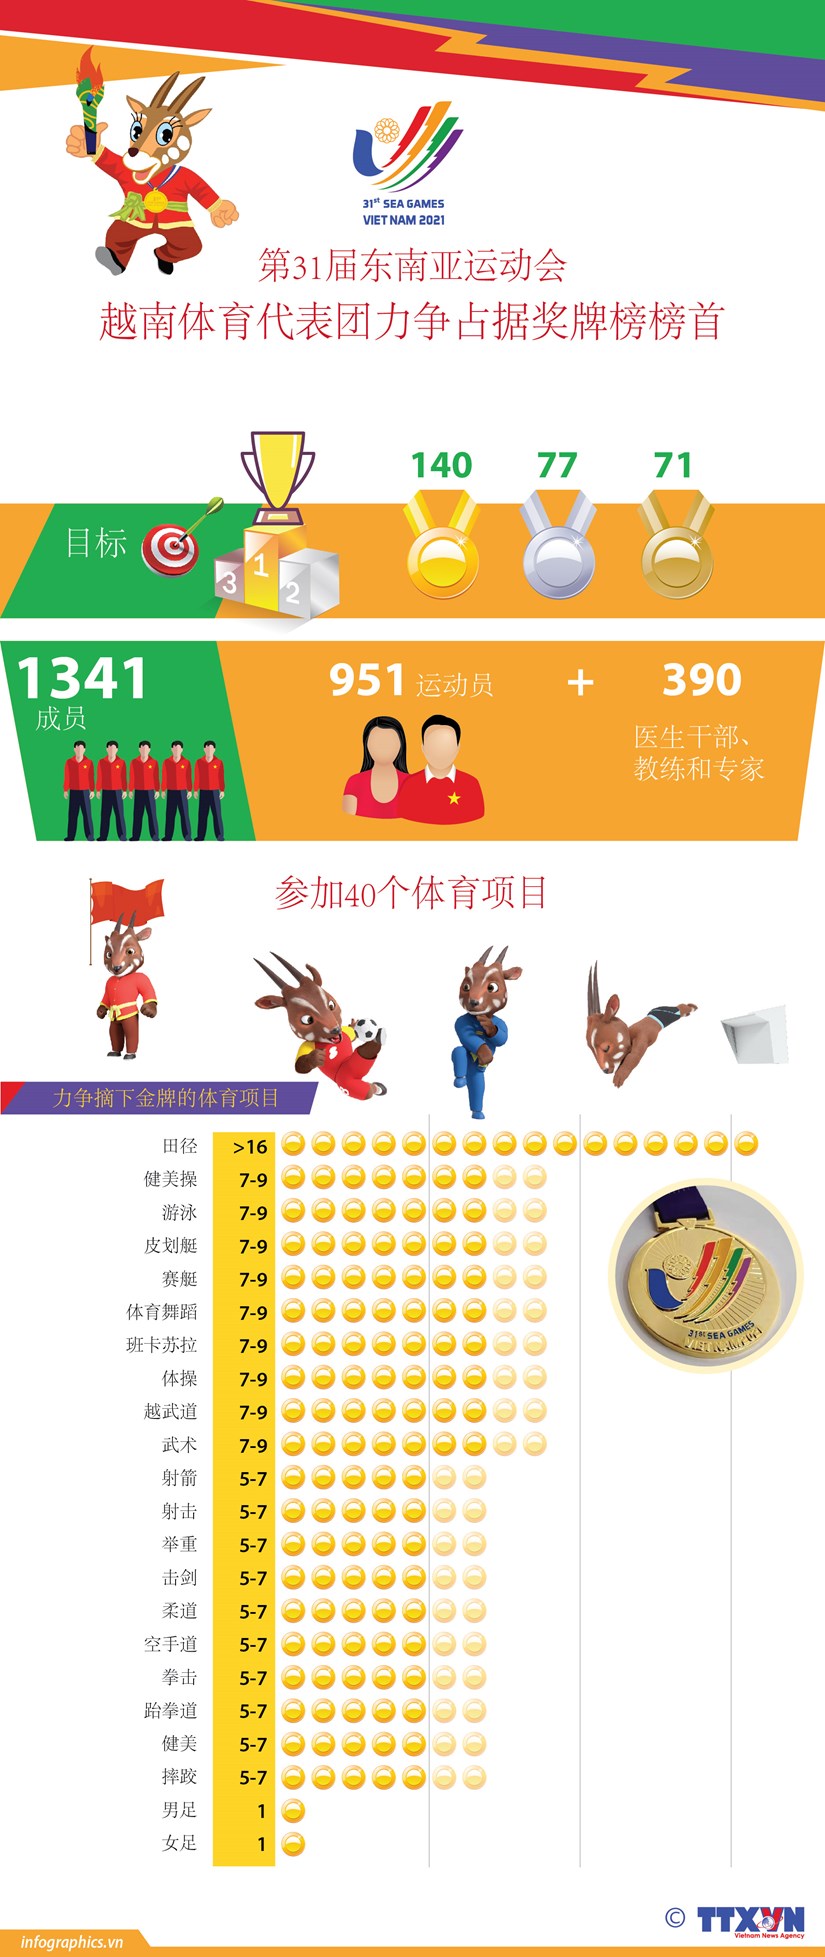 图表新闻：越南体育代表团力争占据第31届东南亚运动会奖牌榜榜首 hinh anh 1